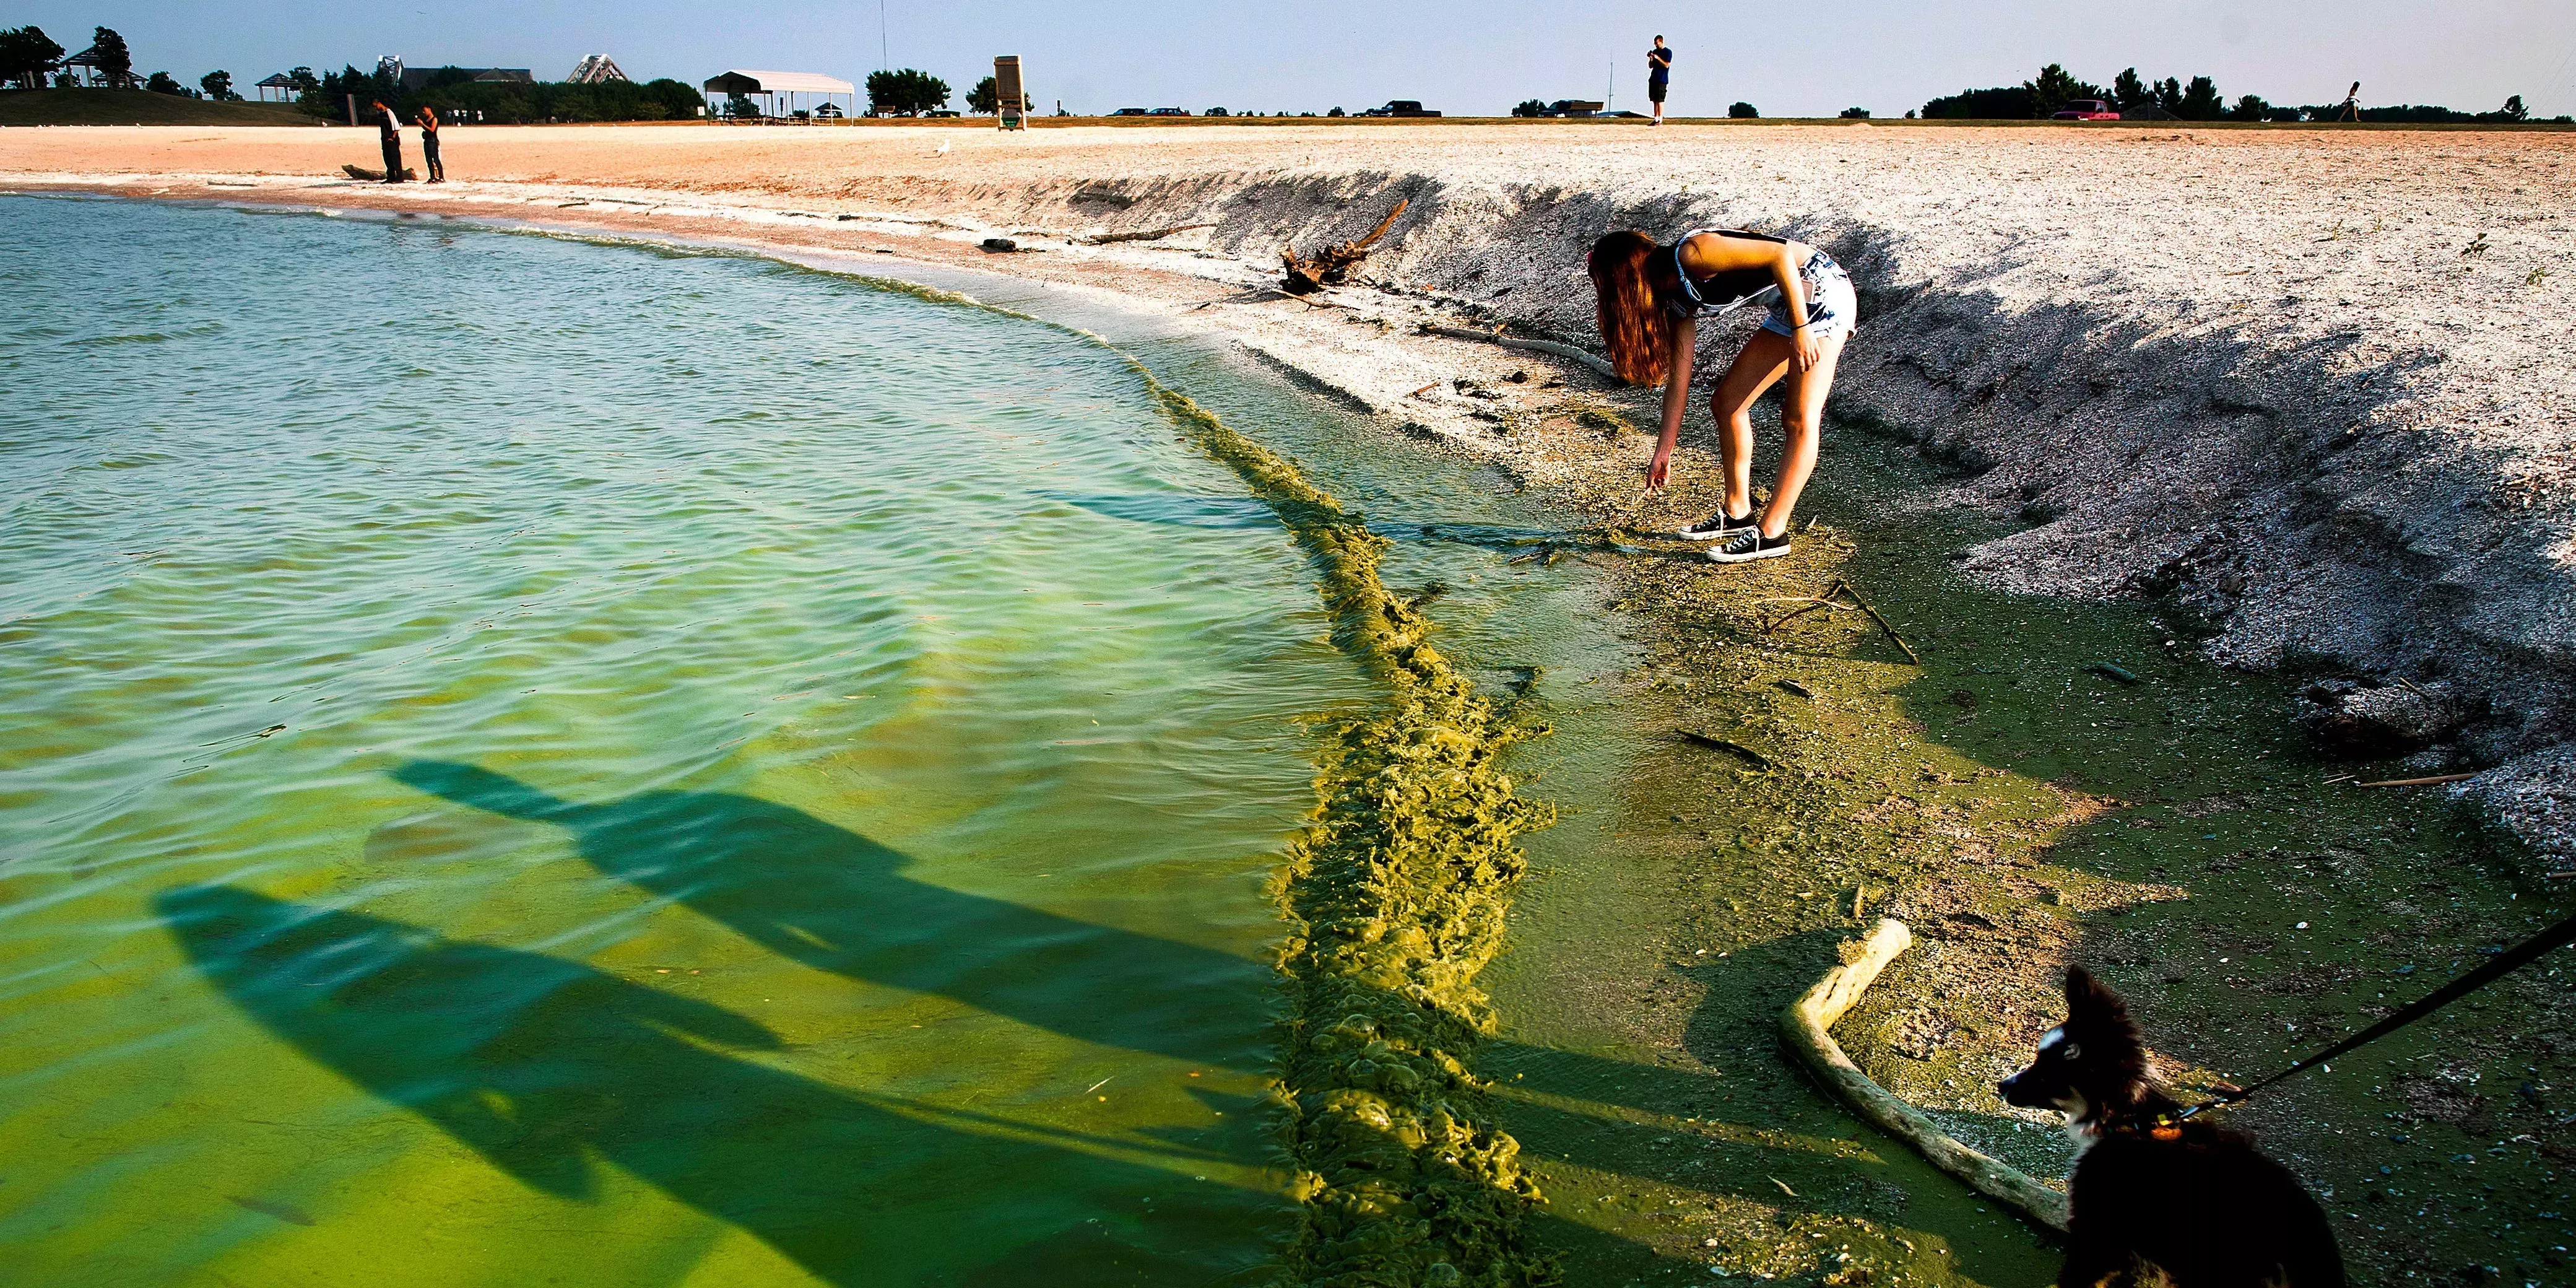 Las floraciones de algas tóxicas están creciendo en lagos y playas de todo Estados Unidos, y los departamentos de salud advierten que pueden envenenar a los niños y matar a las mascotas